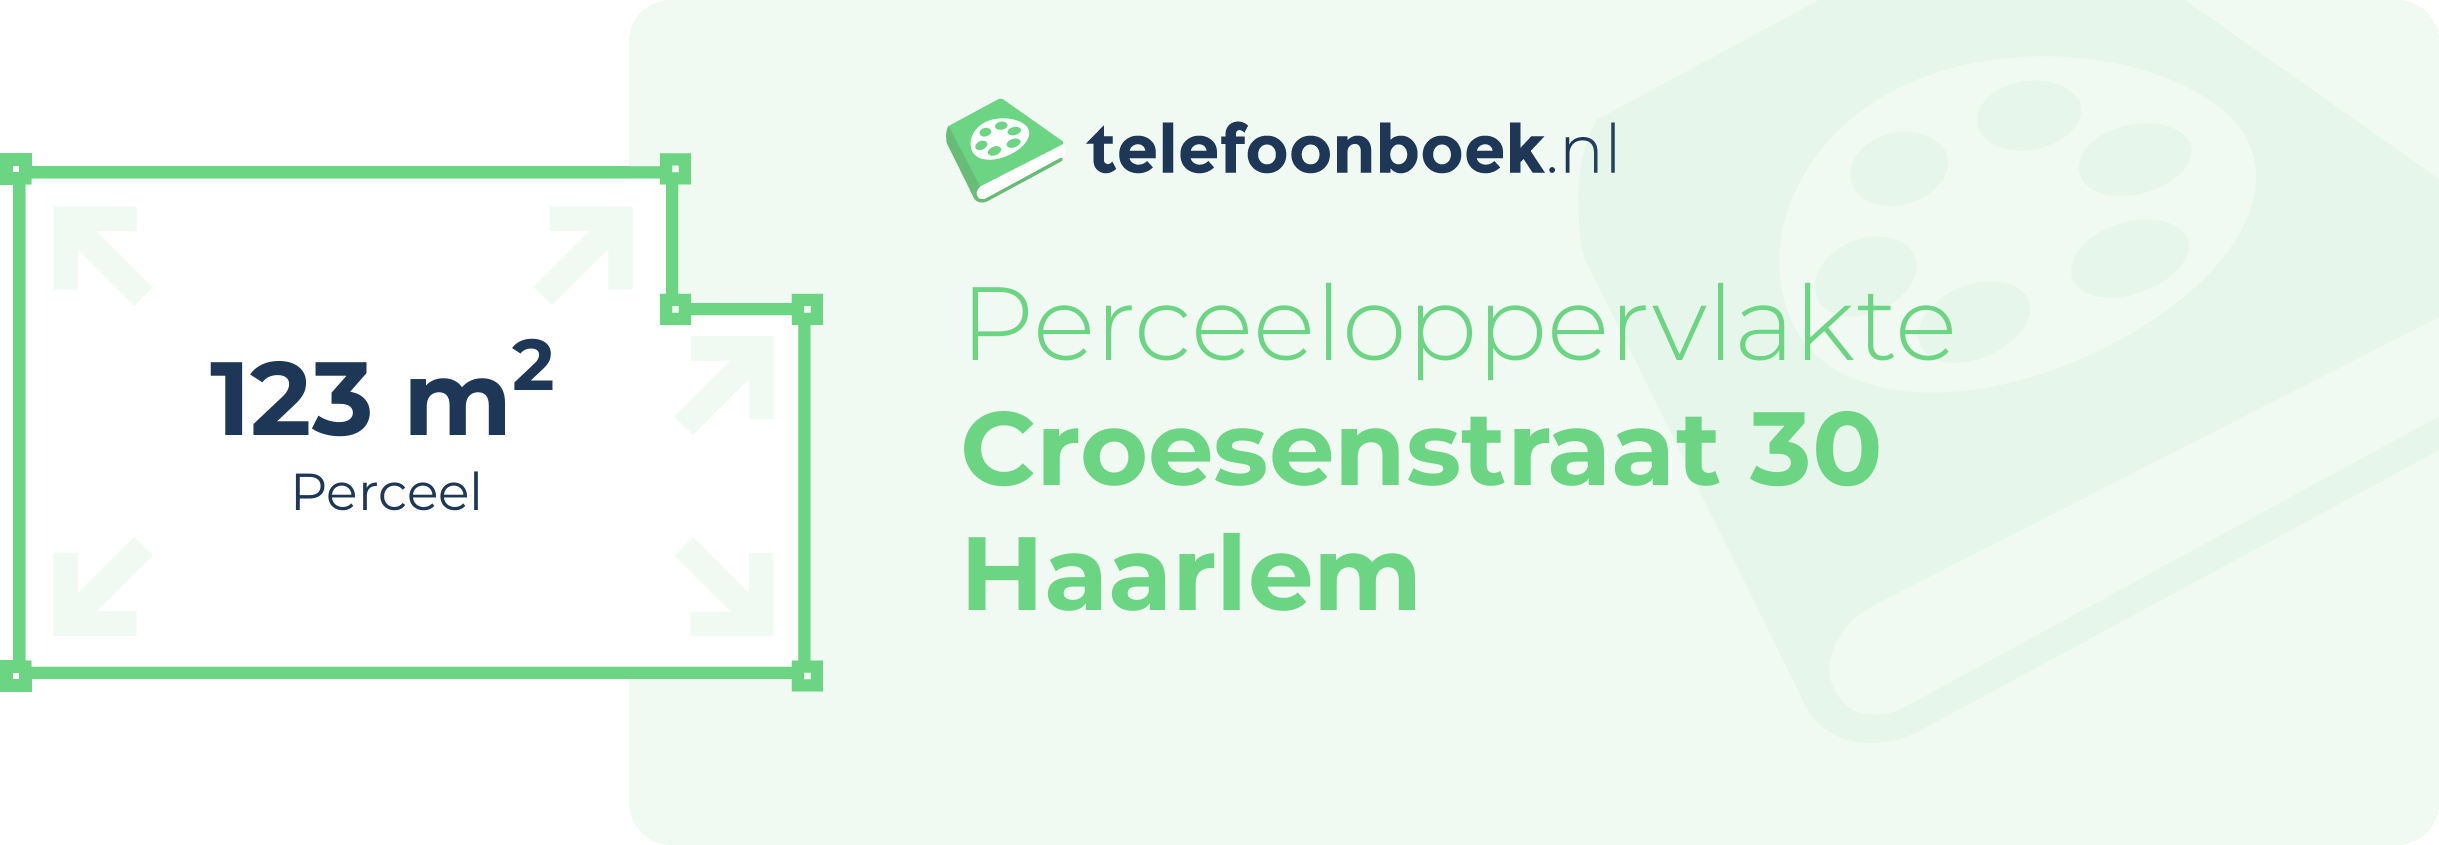 Perceeloppervlakte Croesenstraat 30 Haarlem